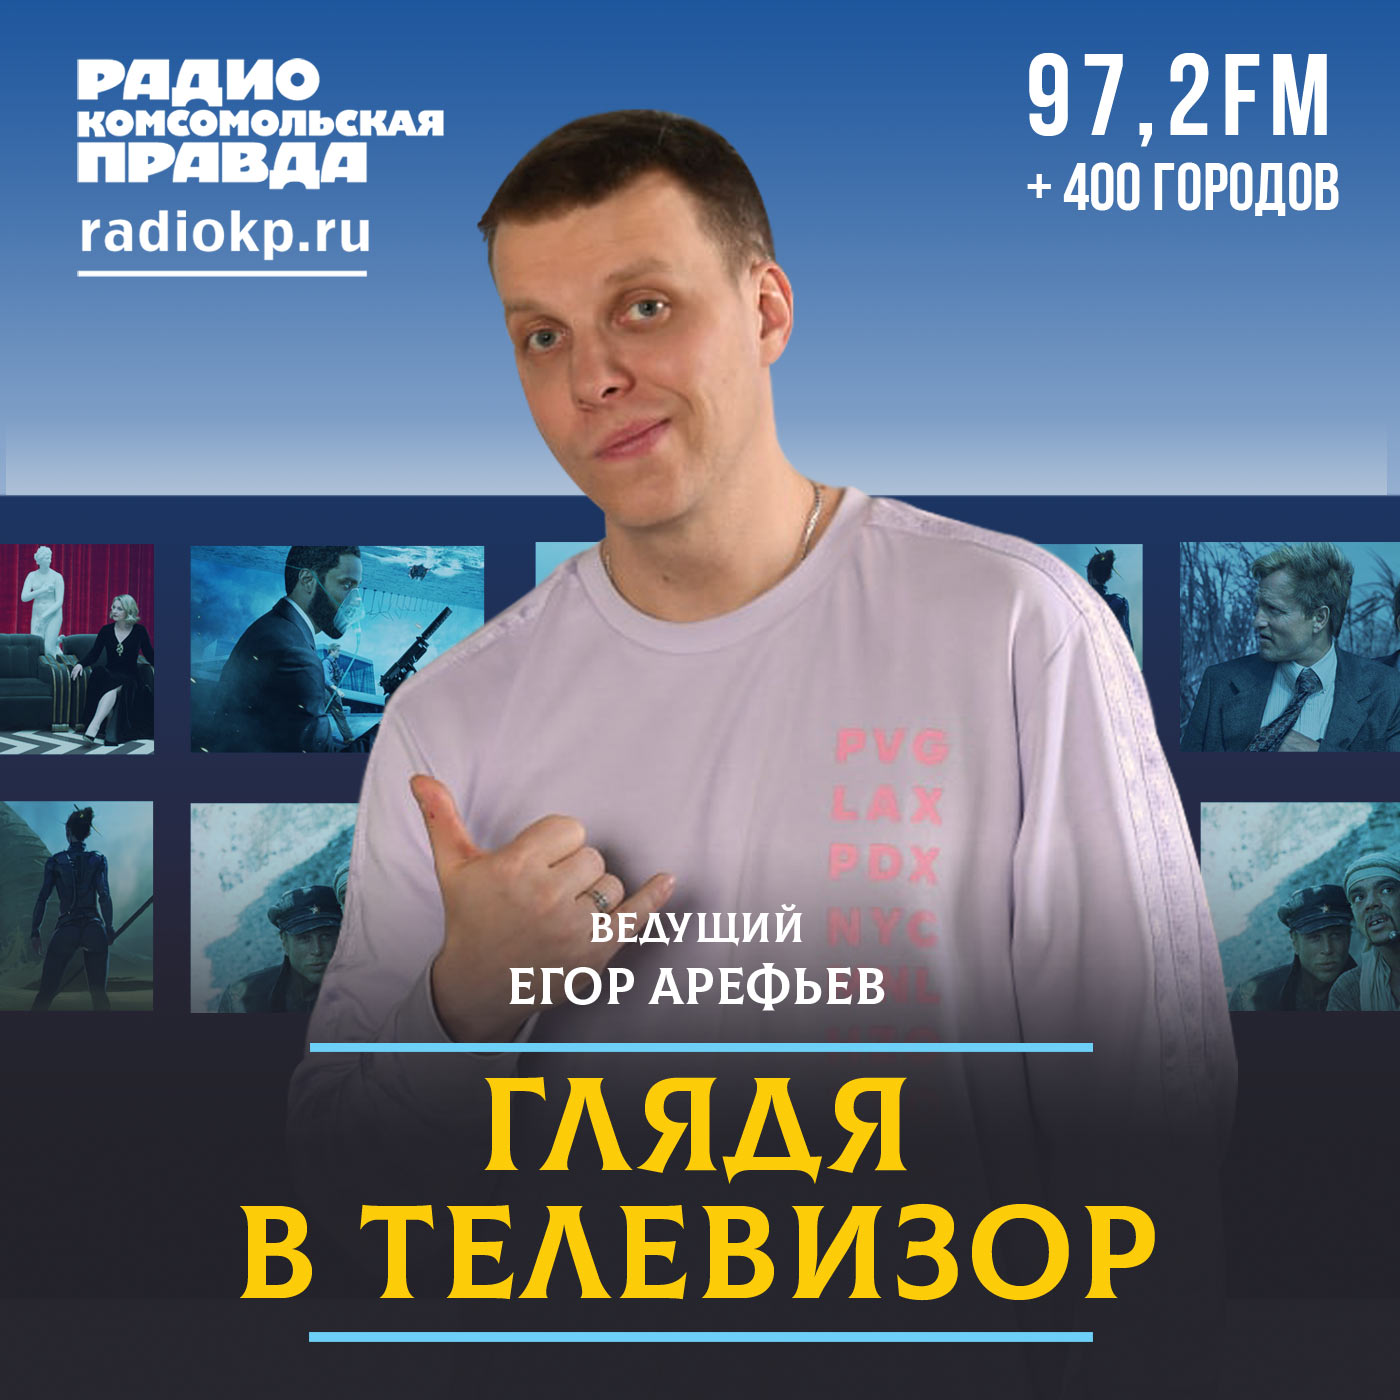 Глядя в телевизор:Радио «Комсомольская правда»